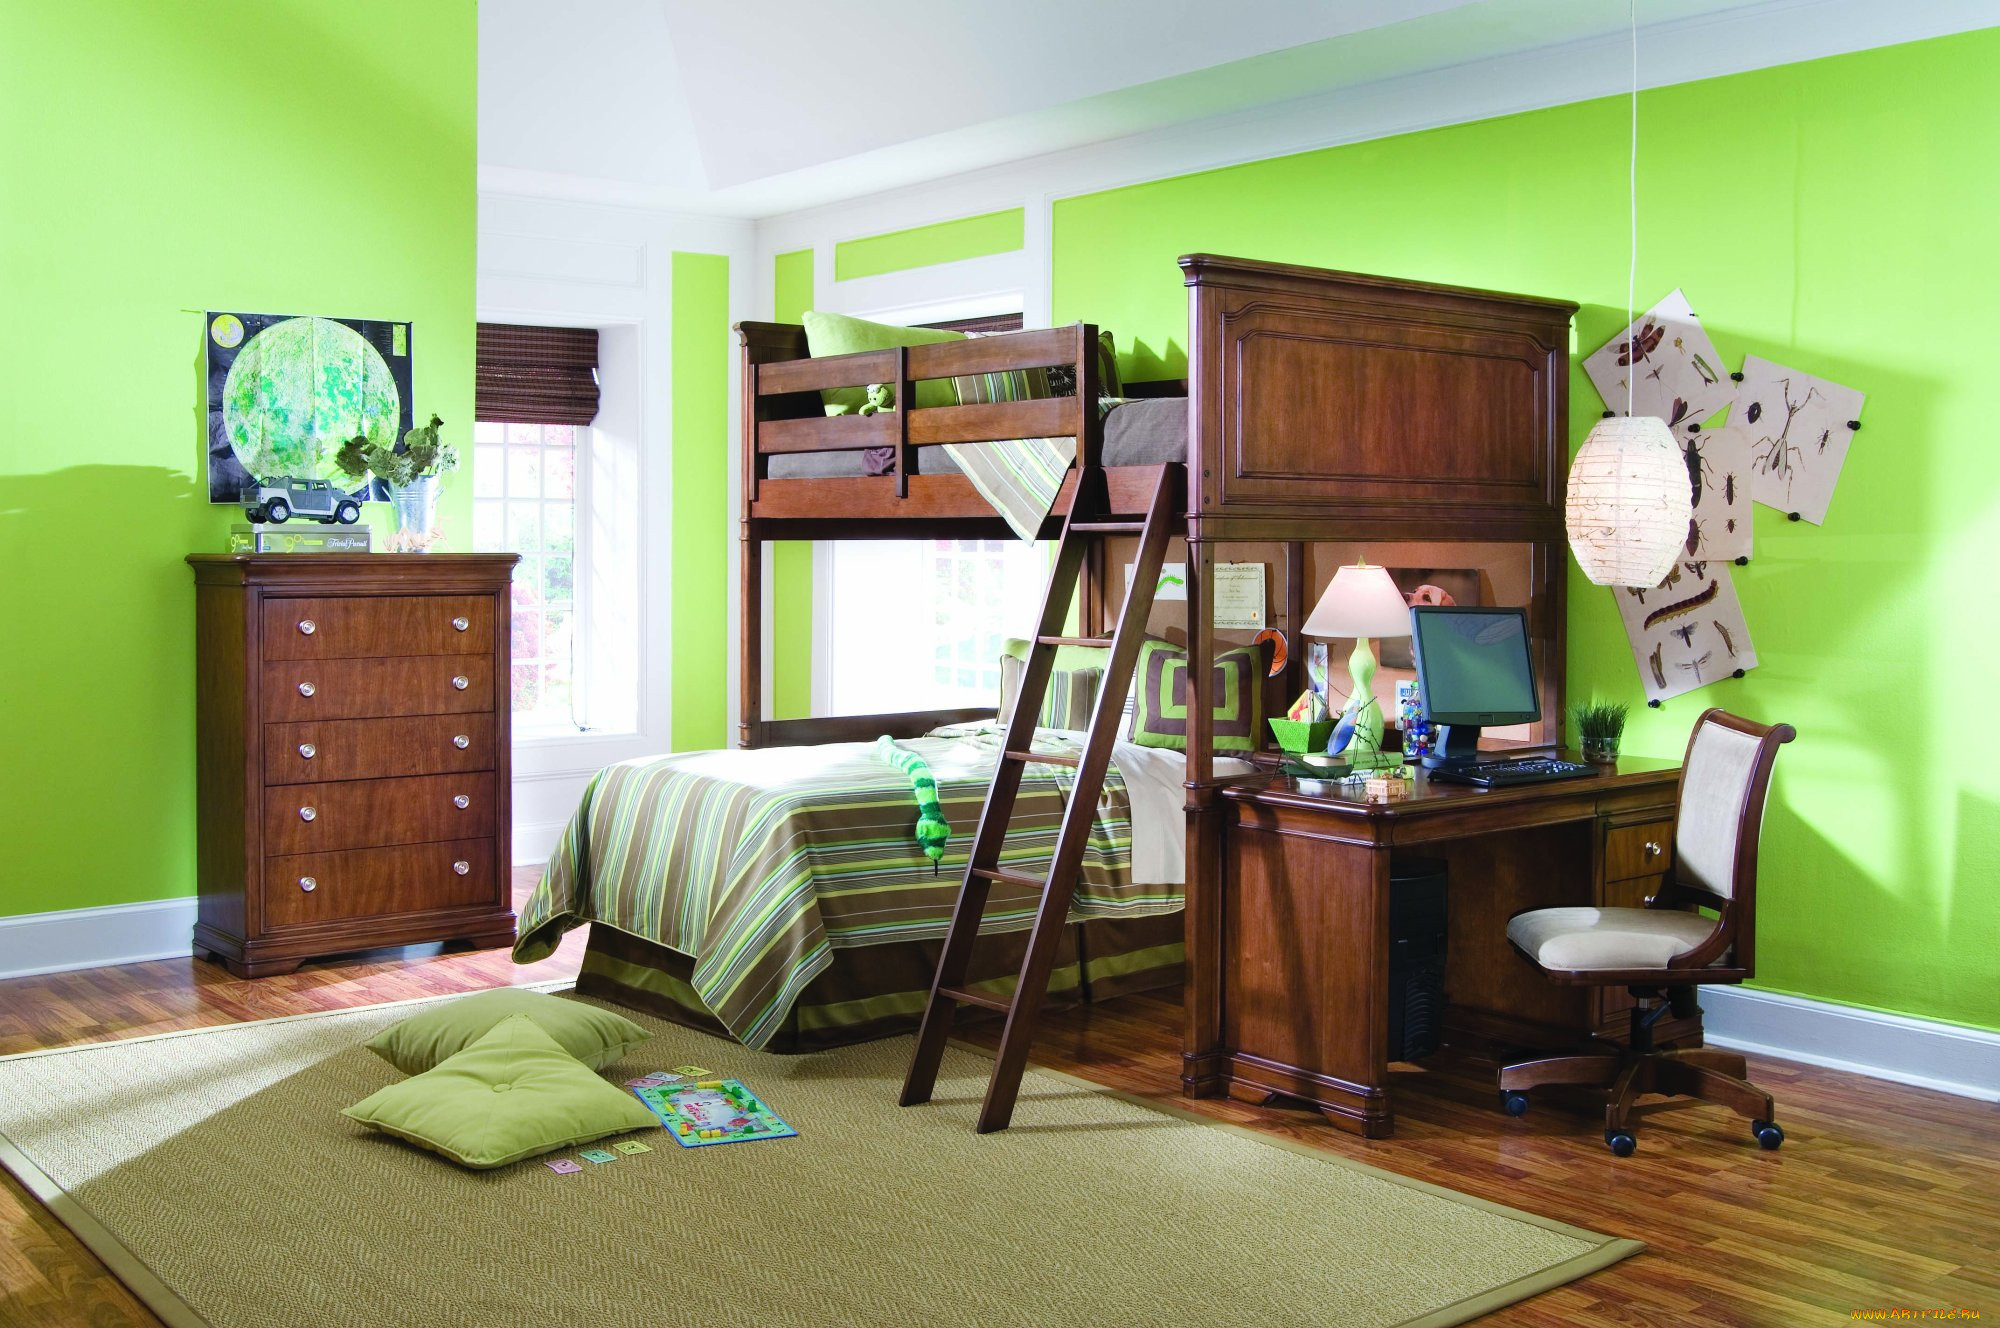 Какая мебель есть в комнате. Детская в зеленых тонах. Детская с зелеными стенами. Детская комната с зелеными обоями. Детская комната с зелеными стенами.